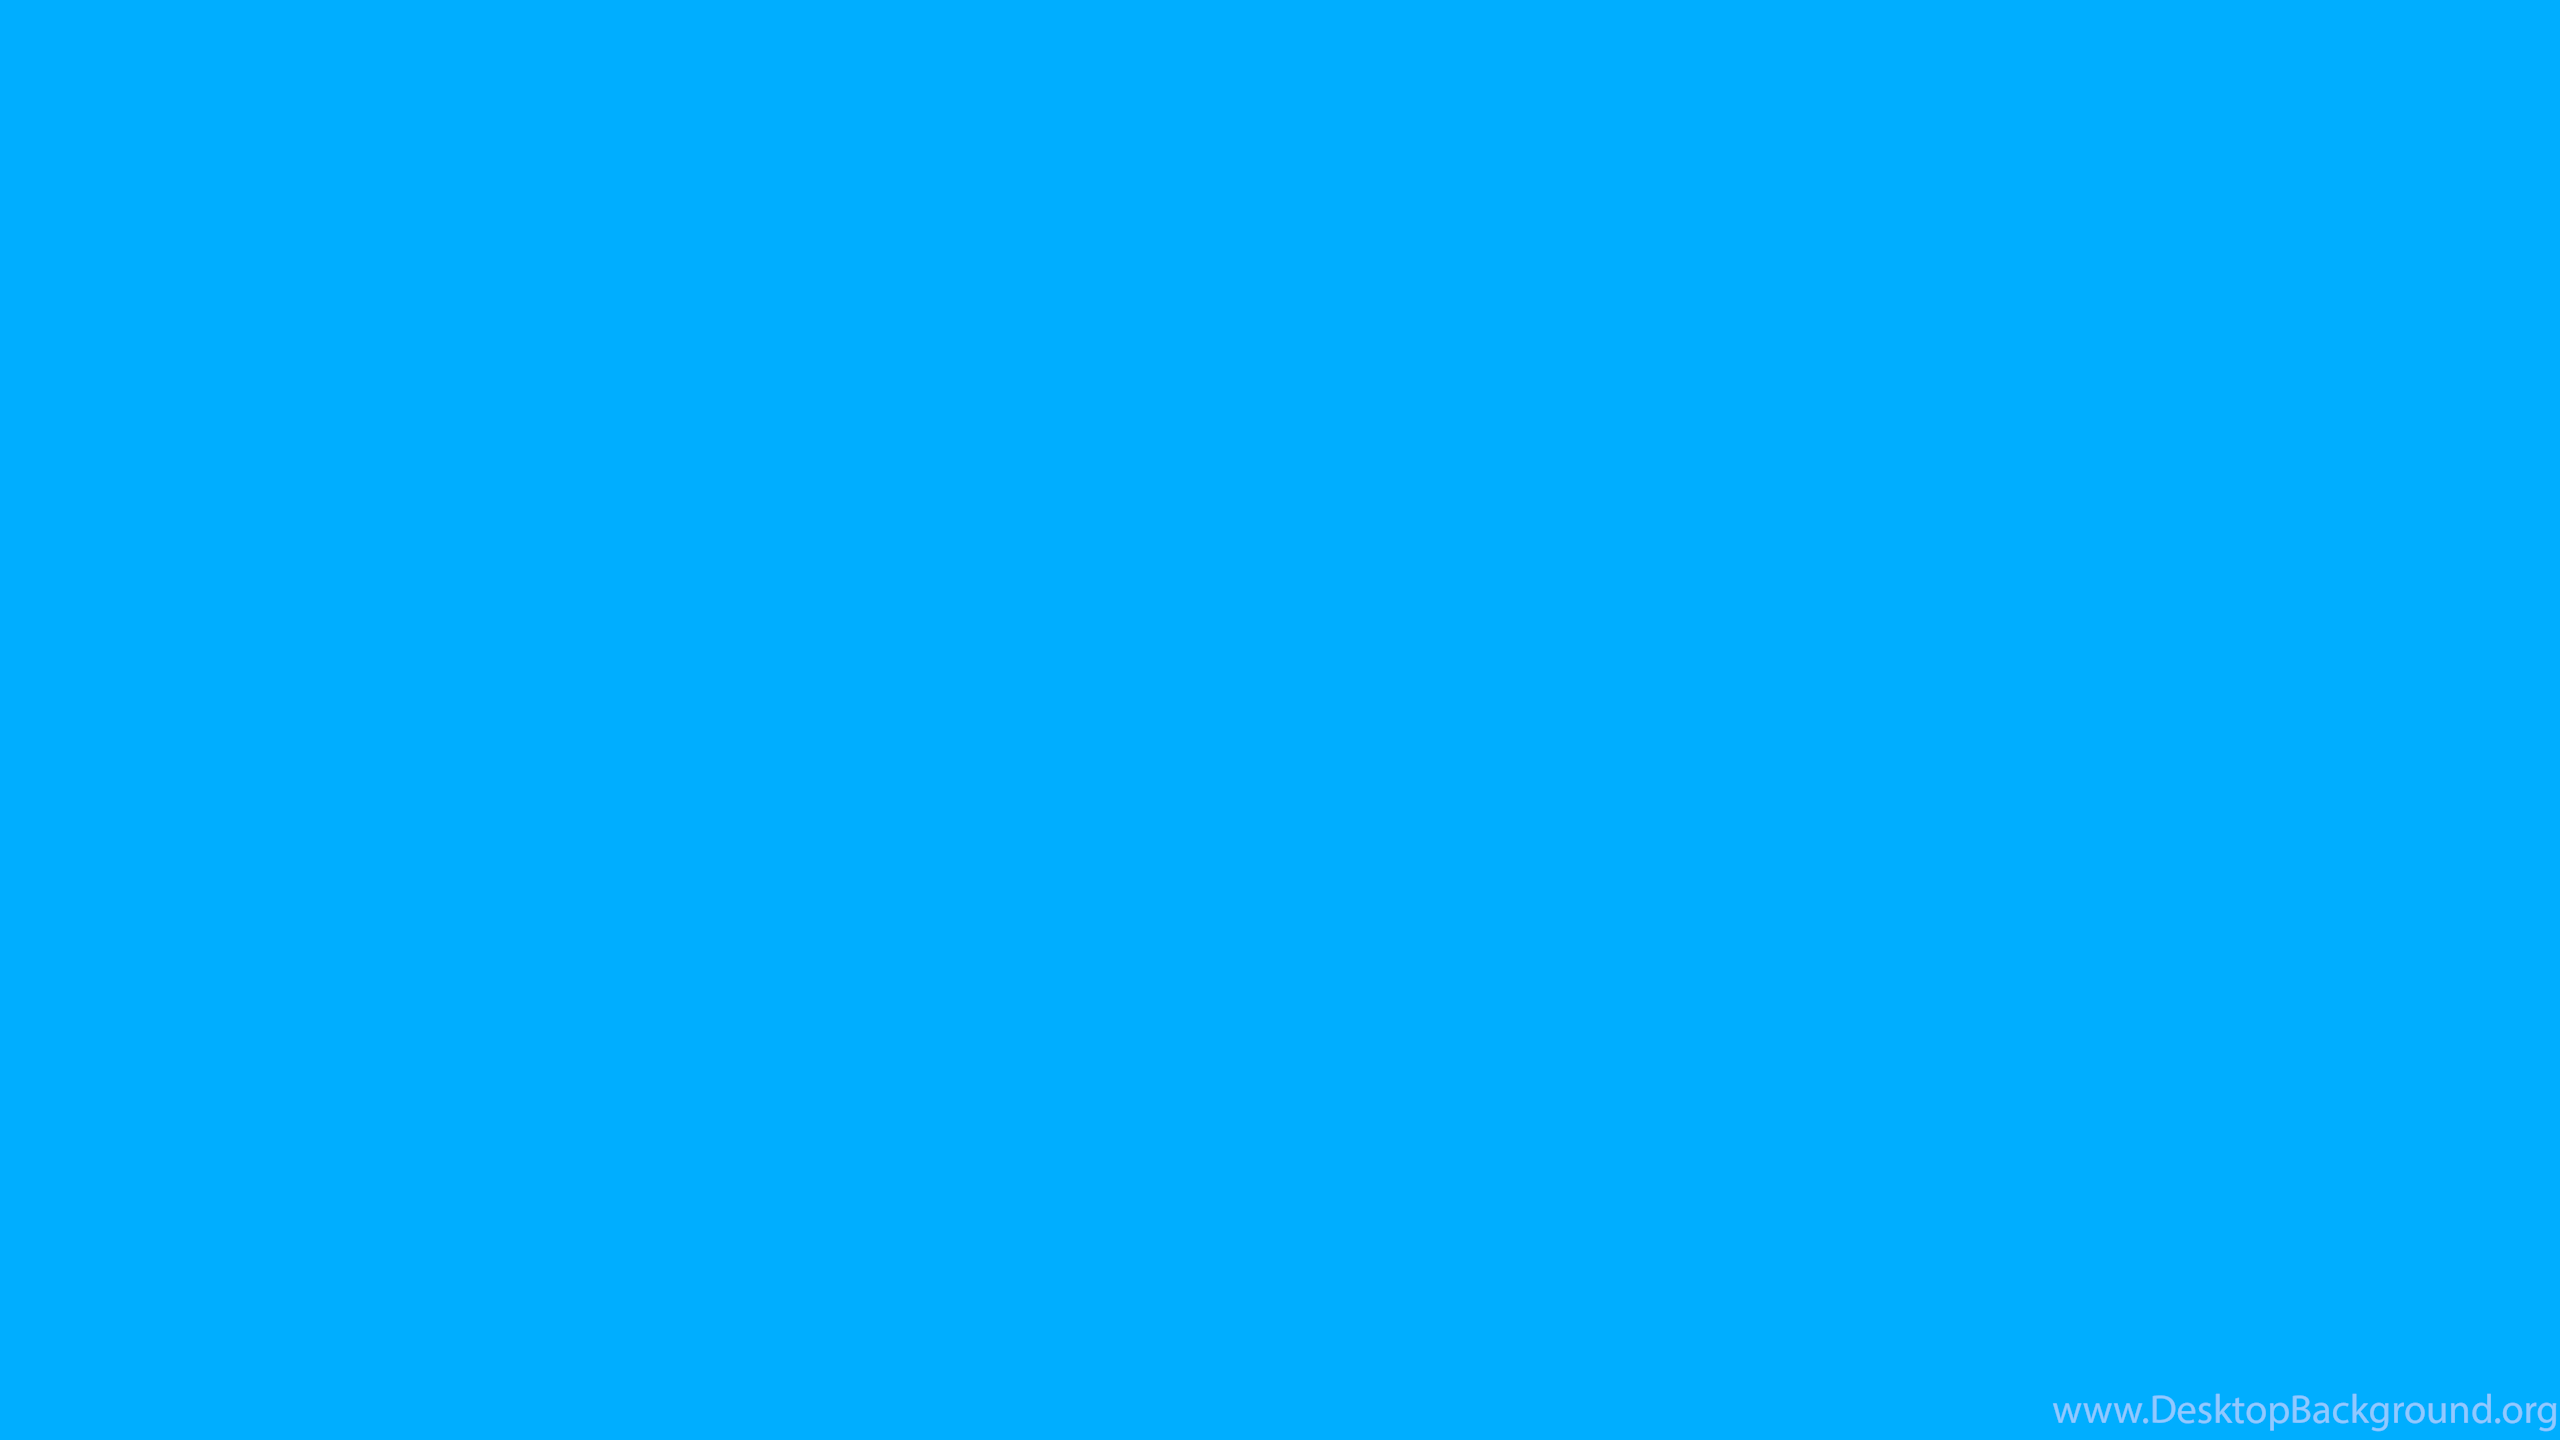 Hình nền màu xanh đơn giản 1920x1080 sẽ mang đến cho bạn một không gian làm việc thanh lịch và tinh tế. Hình ảnh tuy đơn giản nhưng chứa đựng nhiều ý nghĩa giúp bạn tập trung hơn vào công việc, đồng thời giúp mắt bạn được nghỉ ngơi và thư giãn hơn. Hãy cập nhật ngay hình nền màu xanh độc đáo này trên màn hình của bạn!